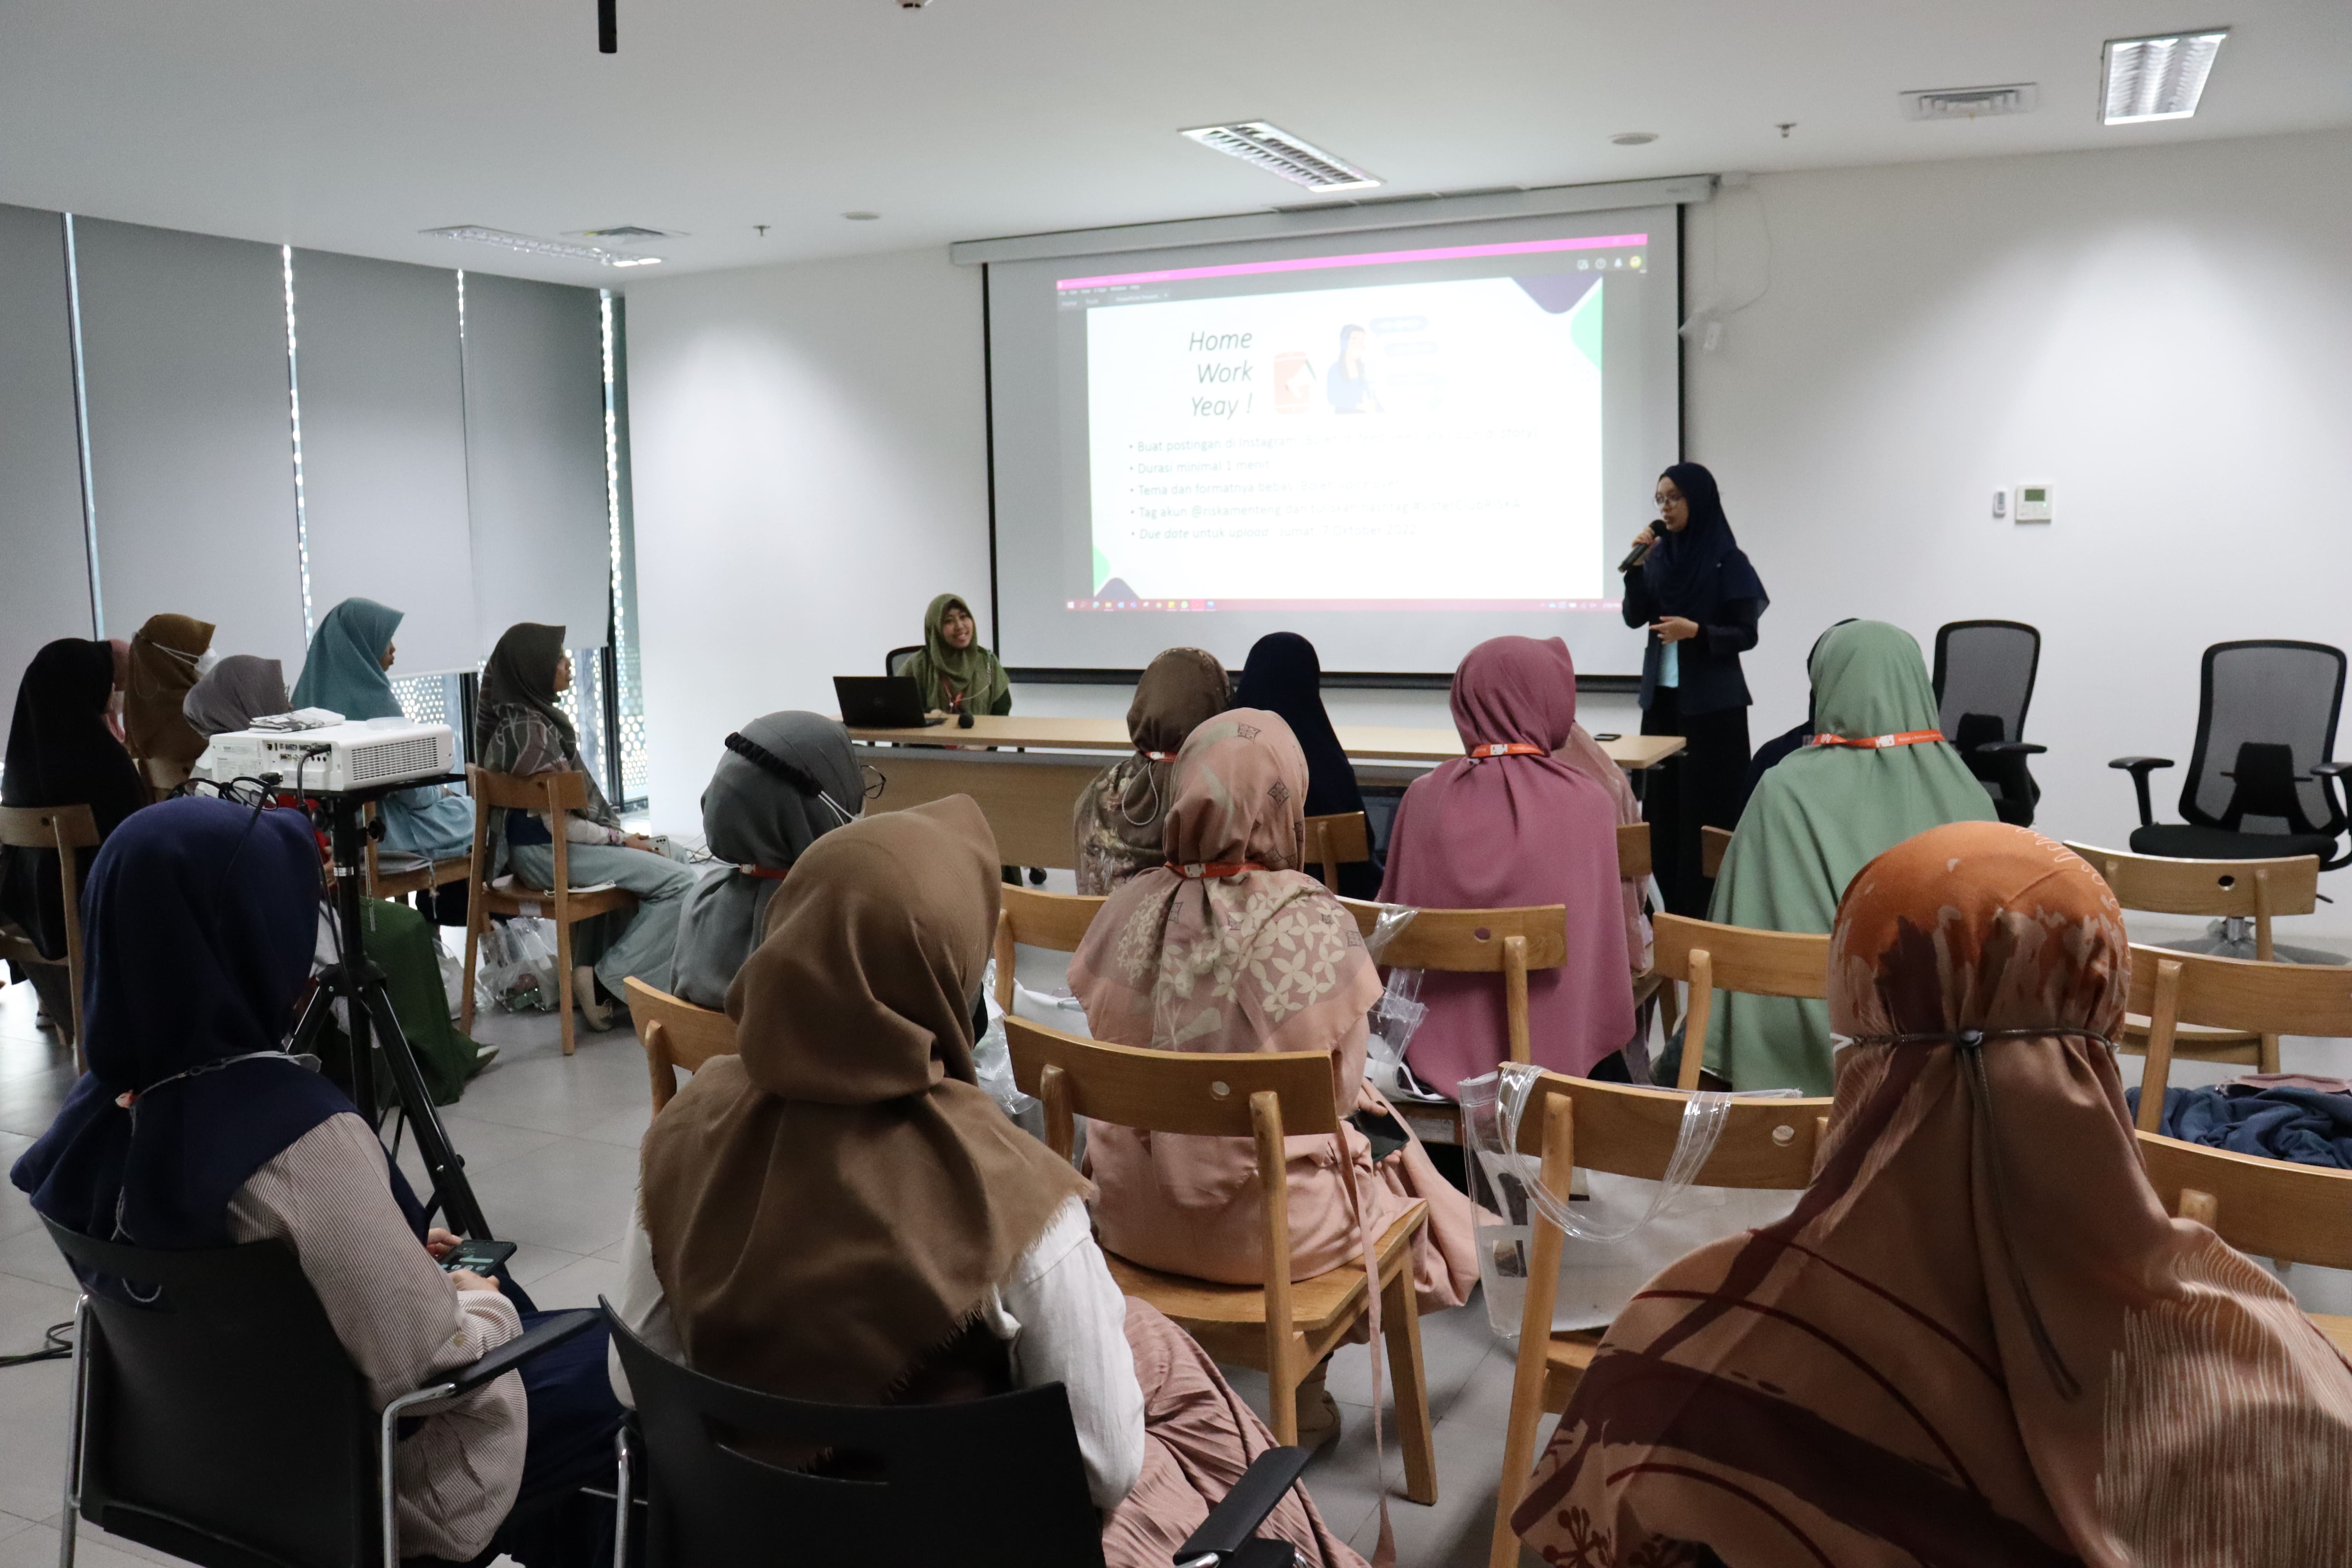 Public Speaking Sister Club (Remaja Islam Sunda Kelapa)